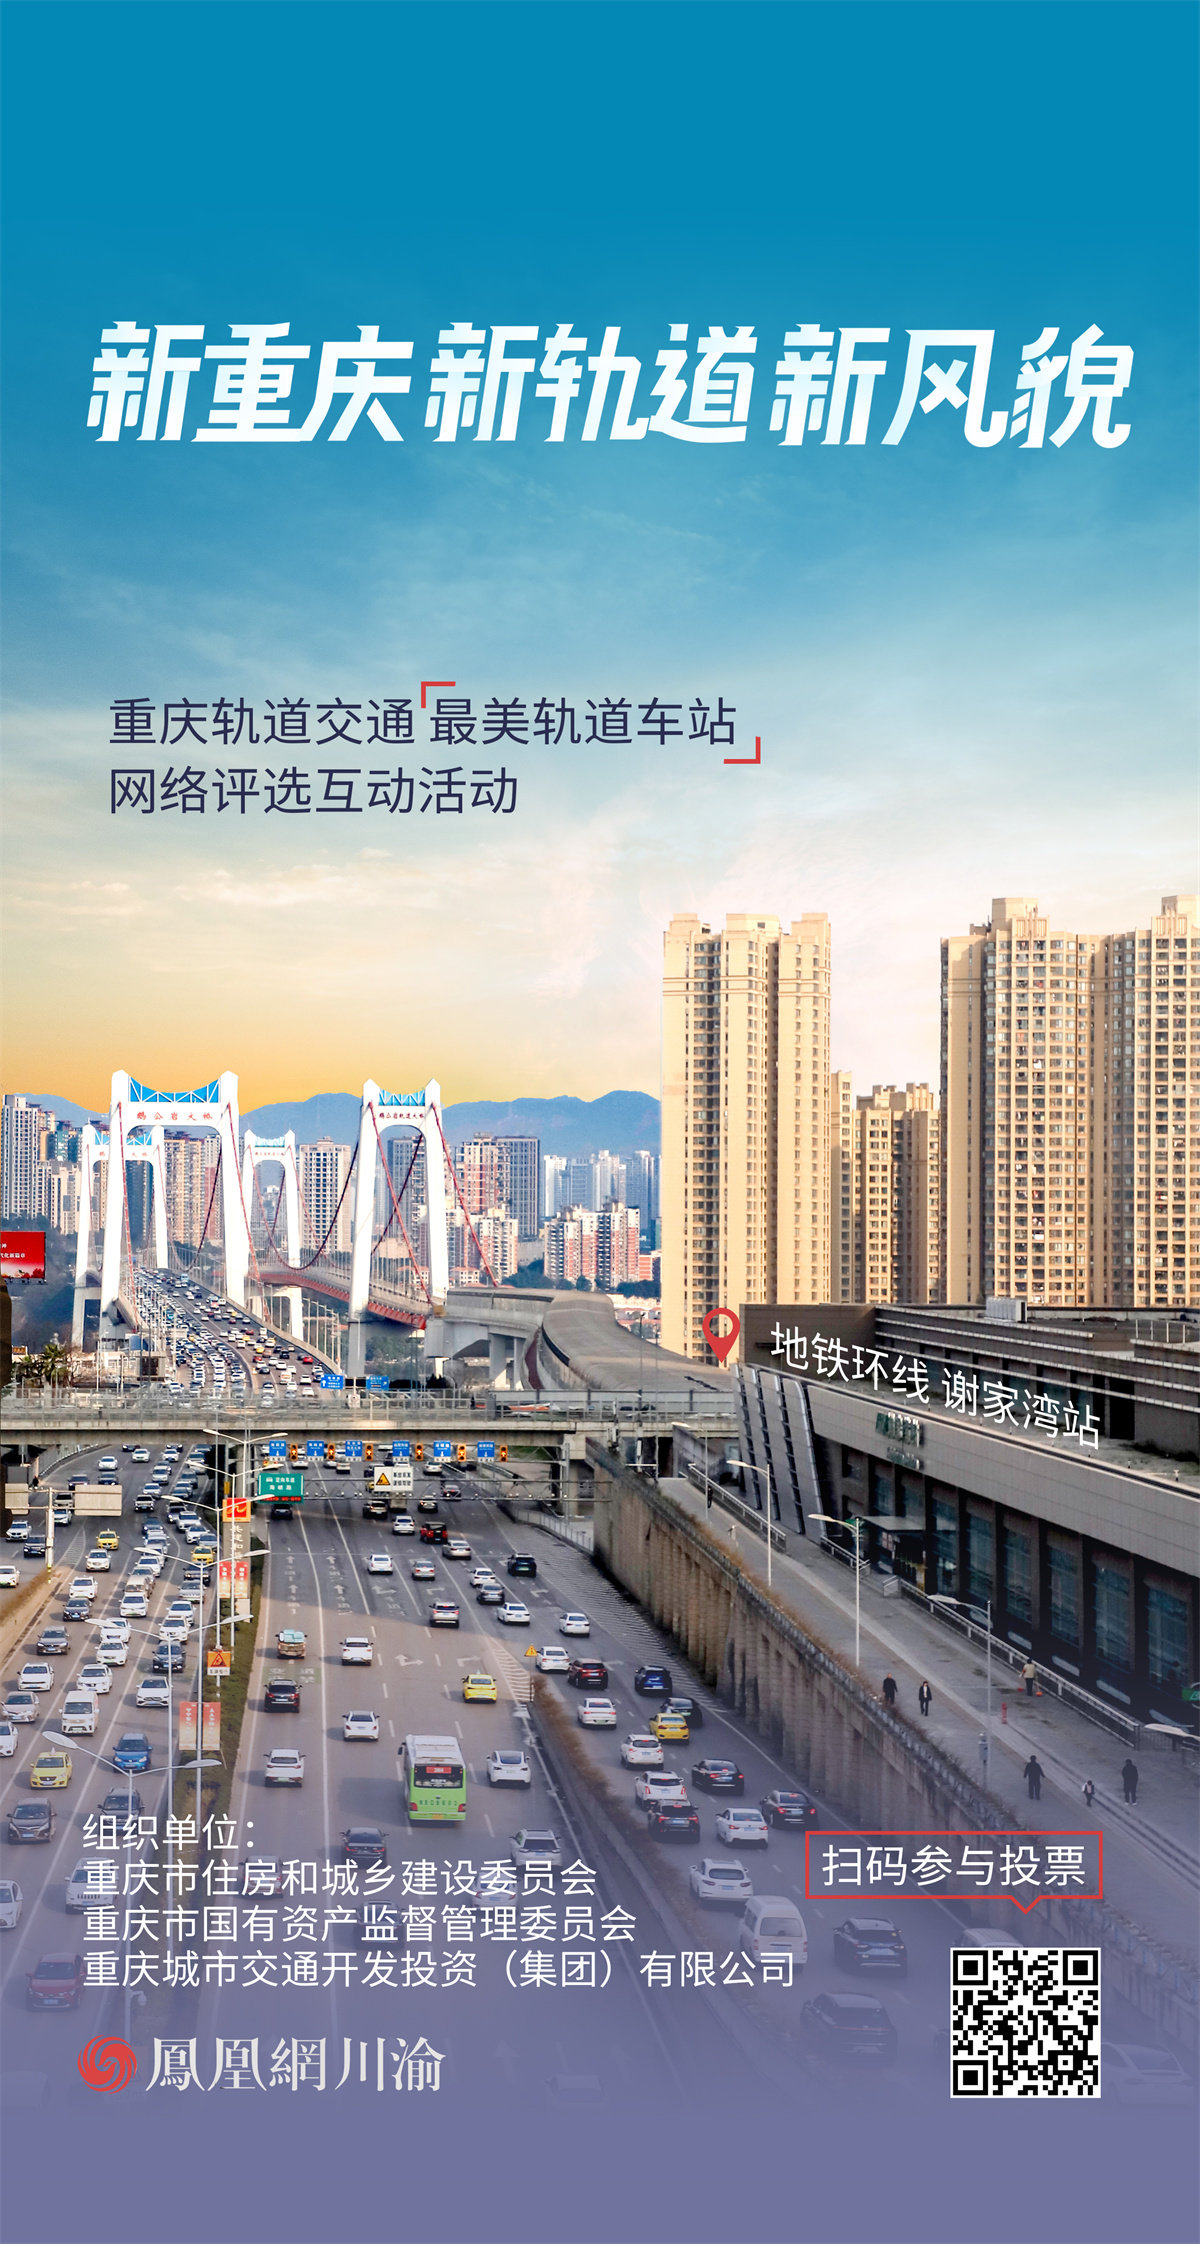 新重庆 新轨道 新风貌丨打卡重庆轨道交通“最美车站”⑦地铁环线、市郊铁路江跳线